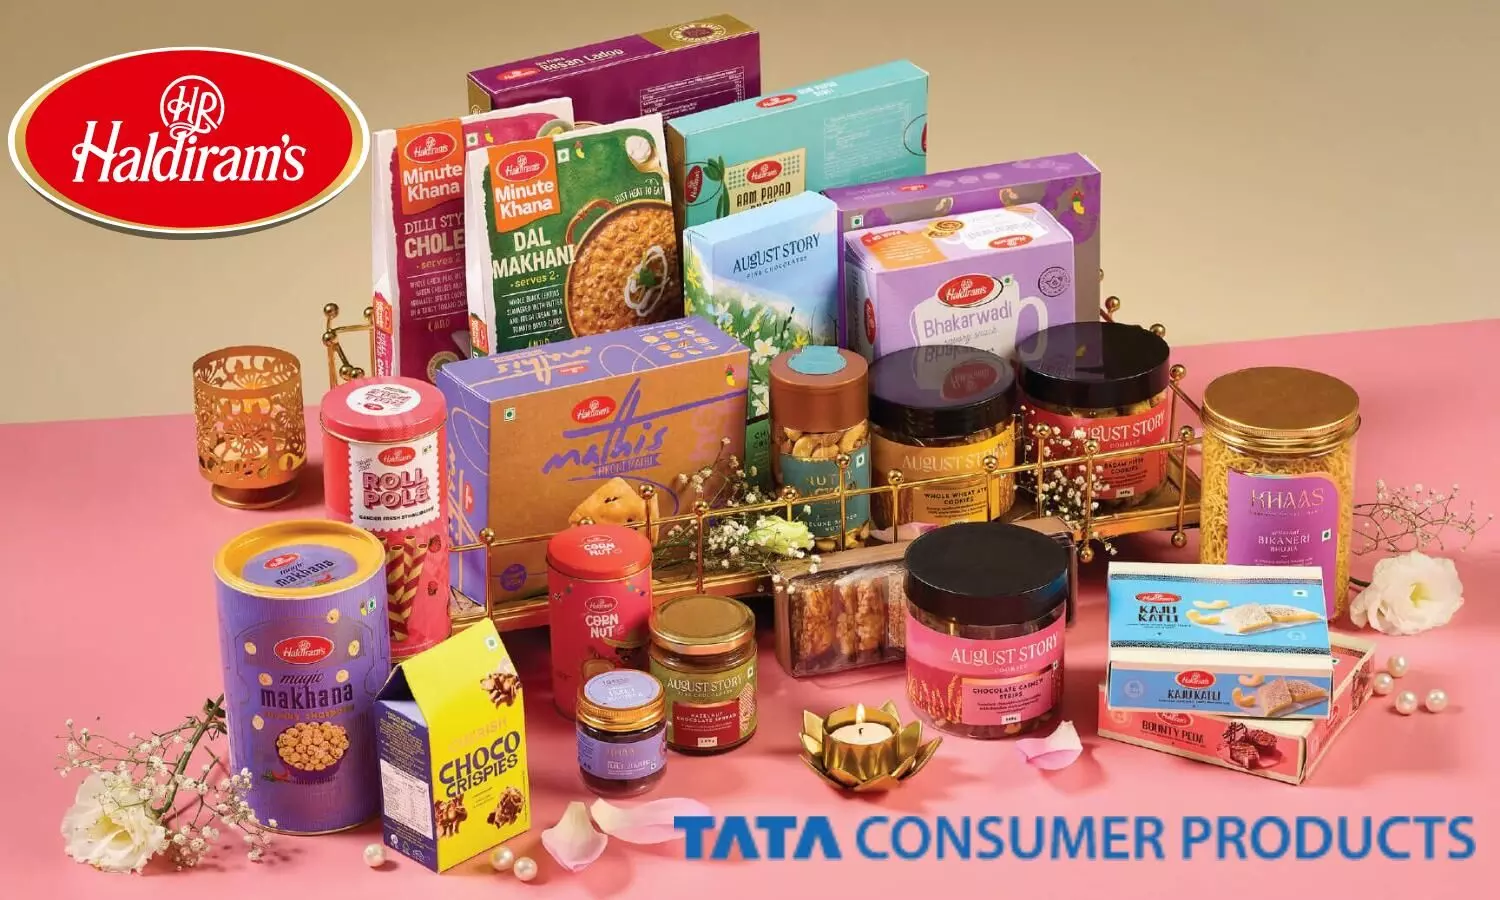 TATA consumer products, Haldiram